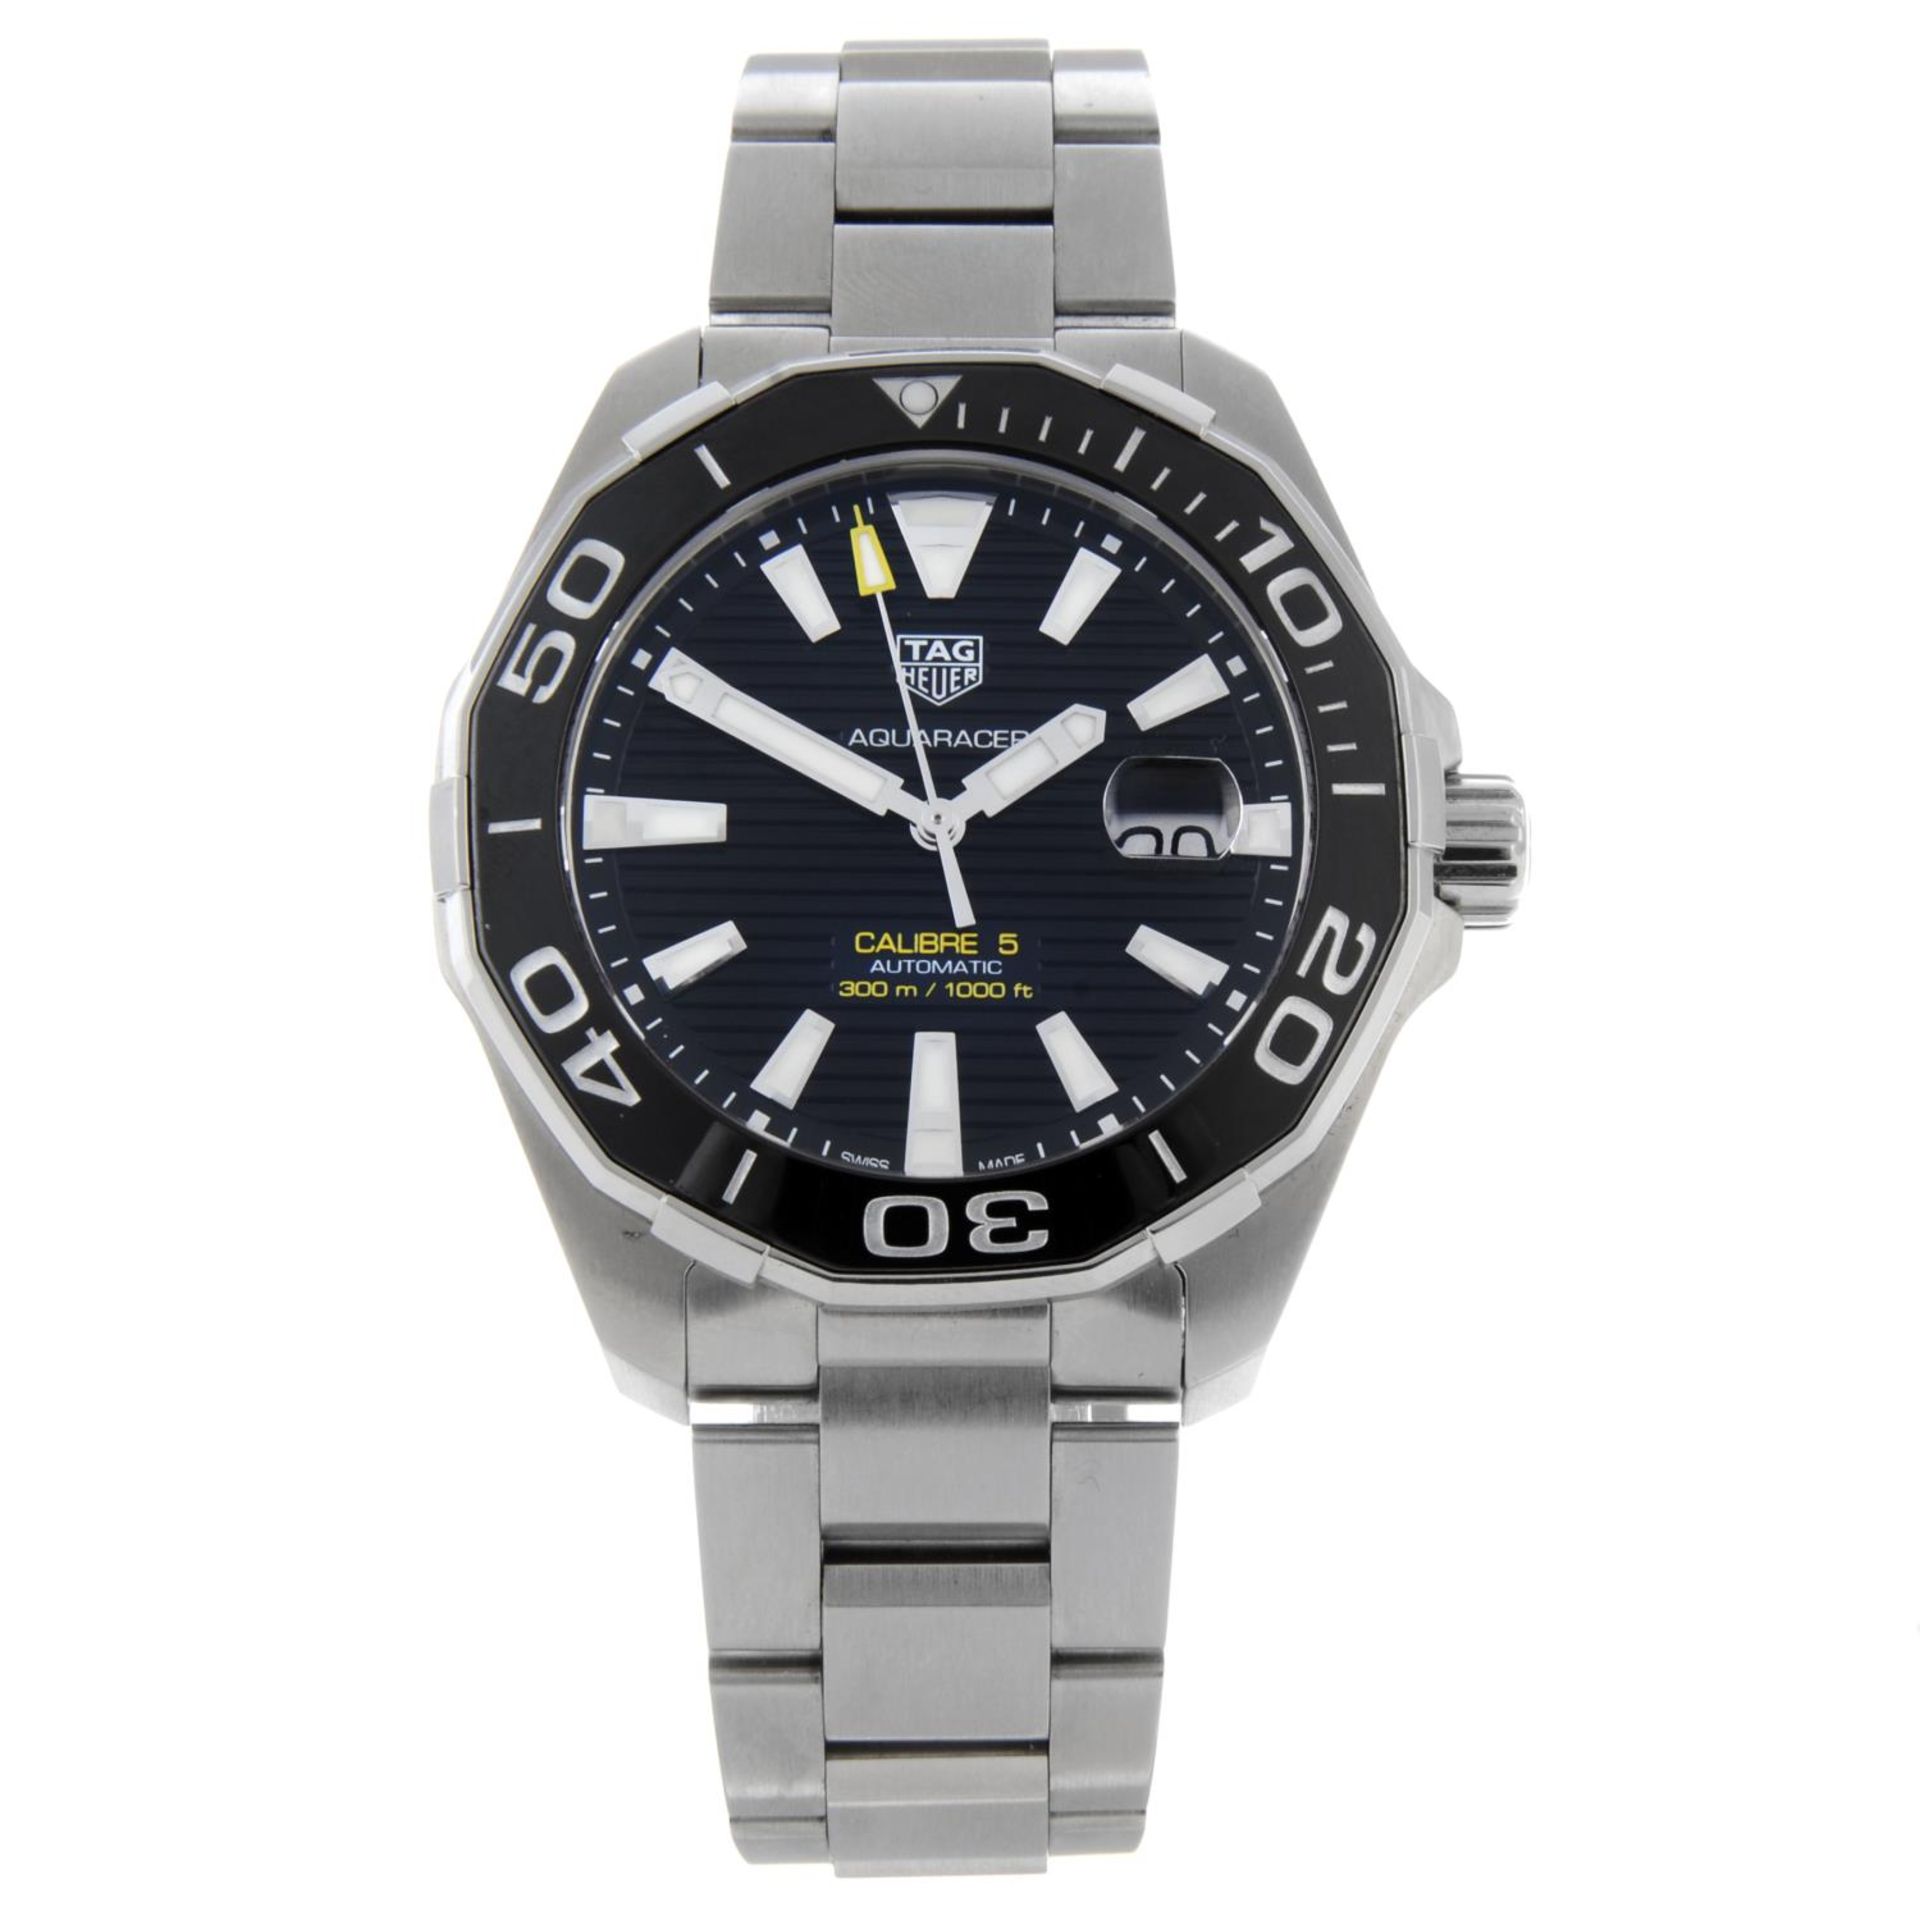 CURRENT MODEL: TAG HEUER - a Aquaracer Calibre 5 bracelet watch.